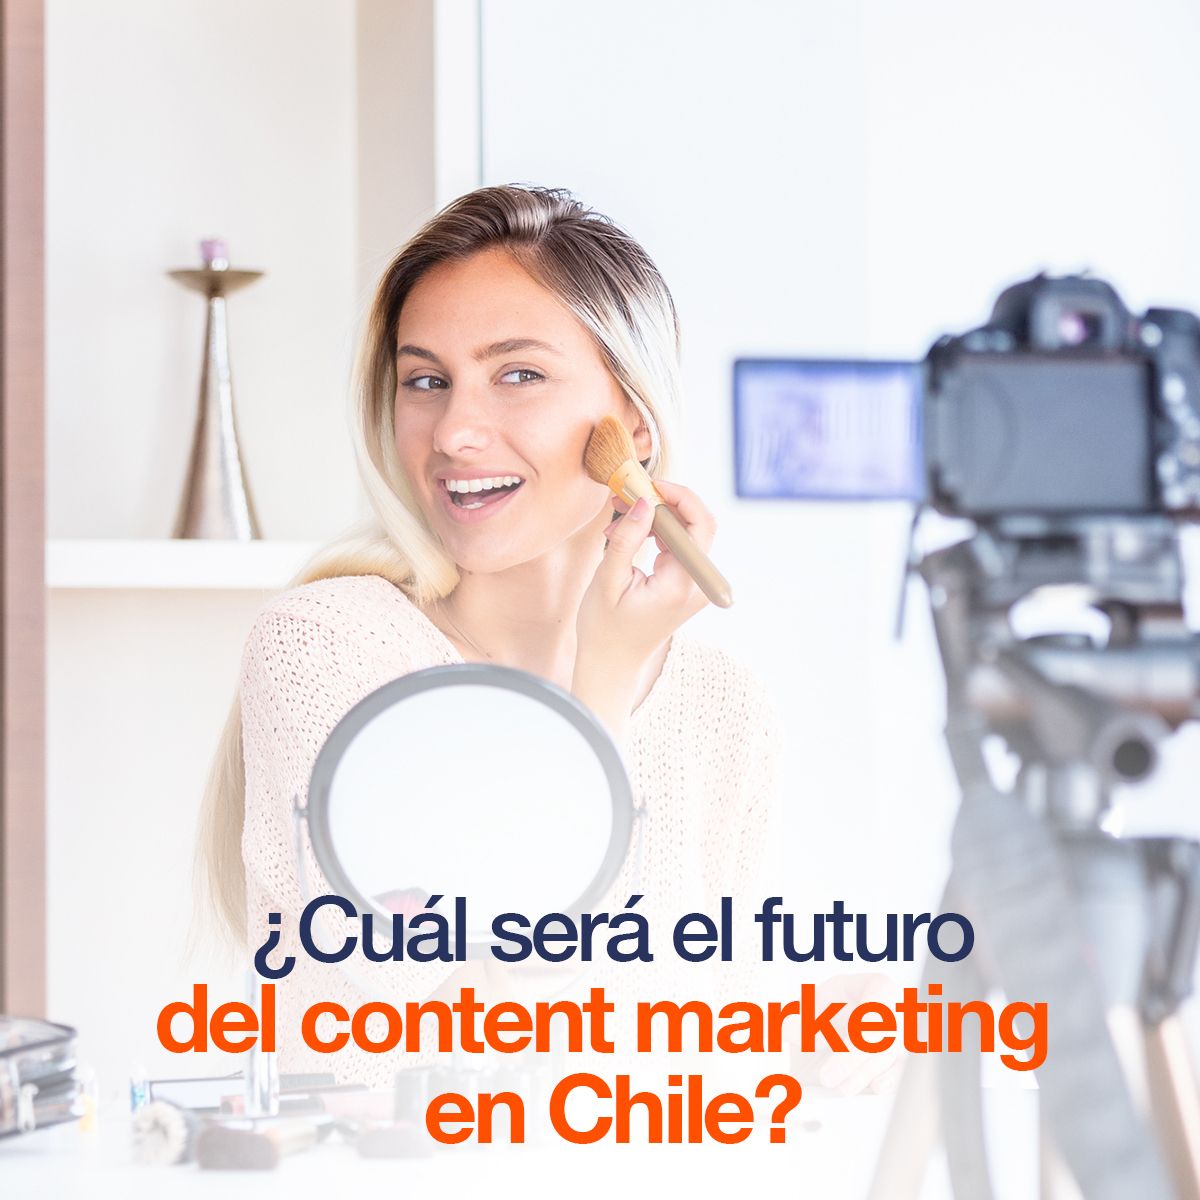 ¿Cuál será el futuro del content marketing en Chile?